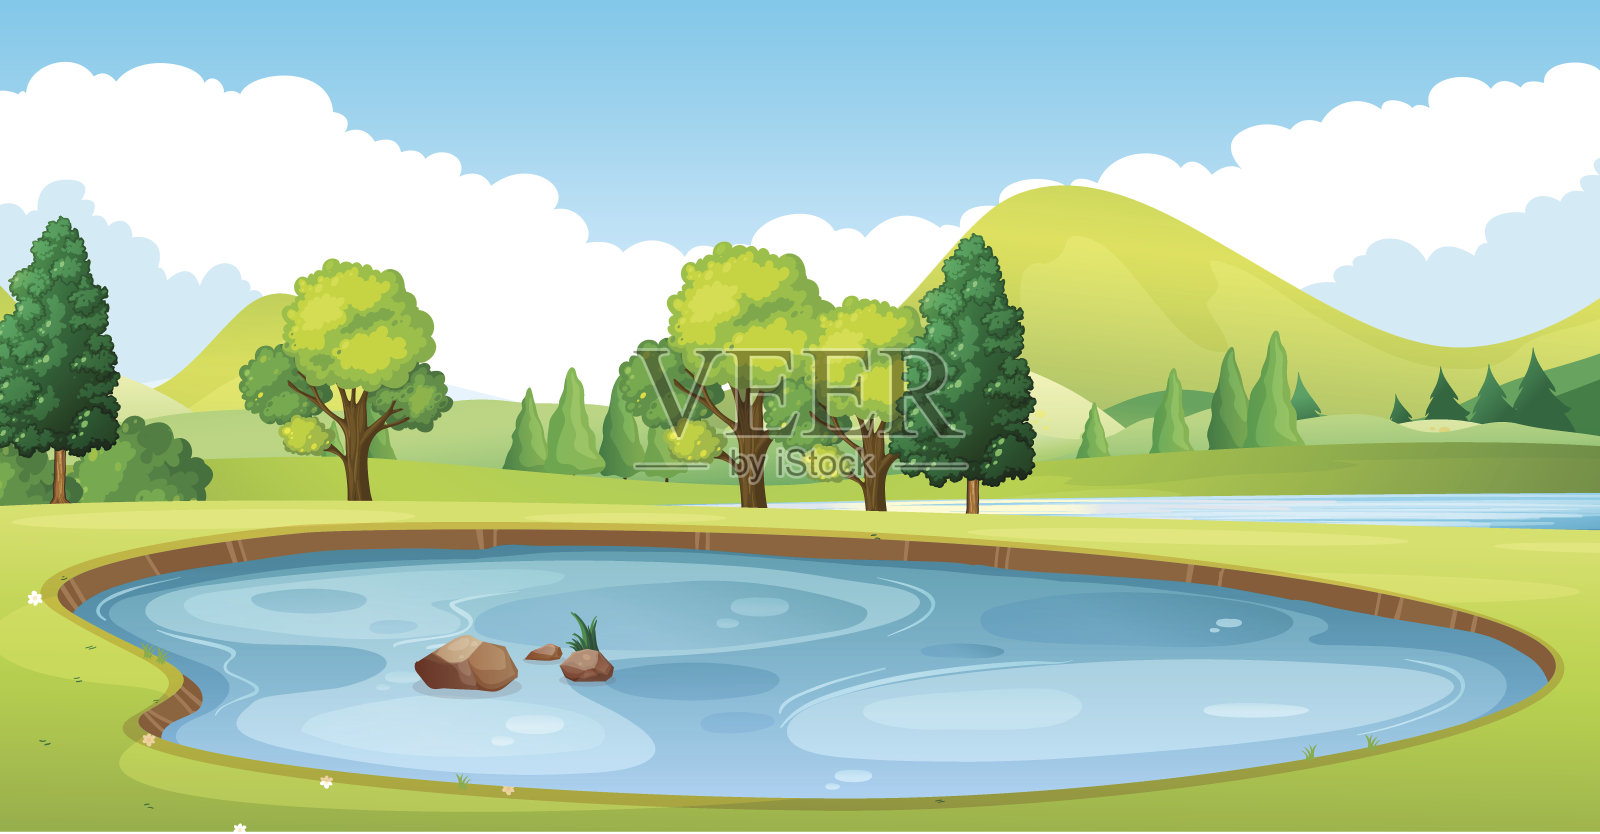 田野中有池塘的场景背景图片素材